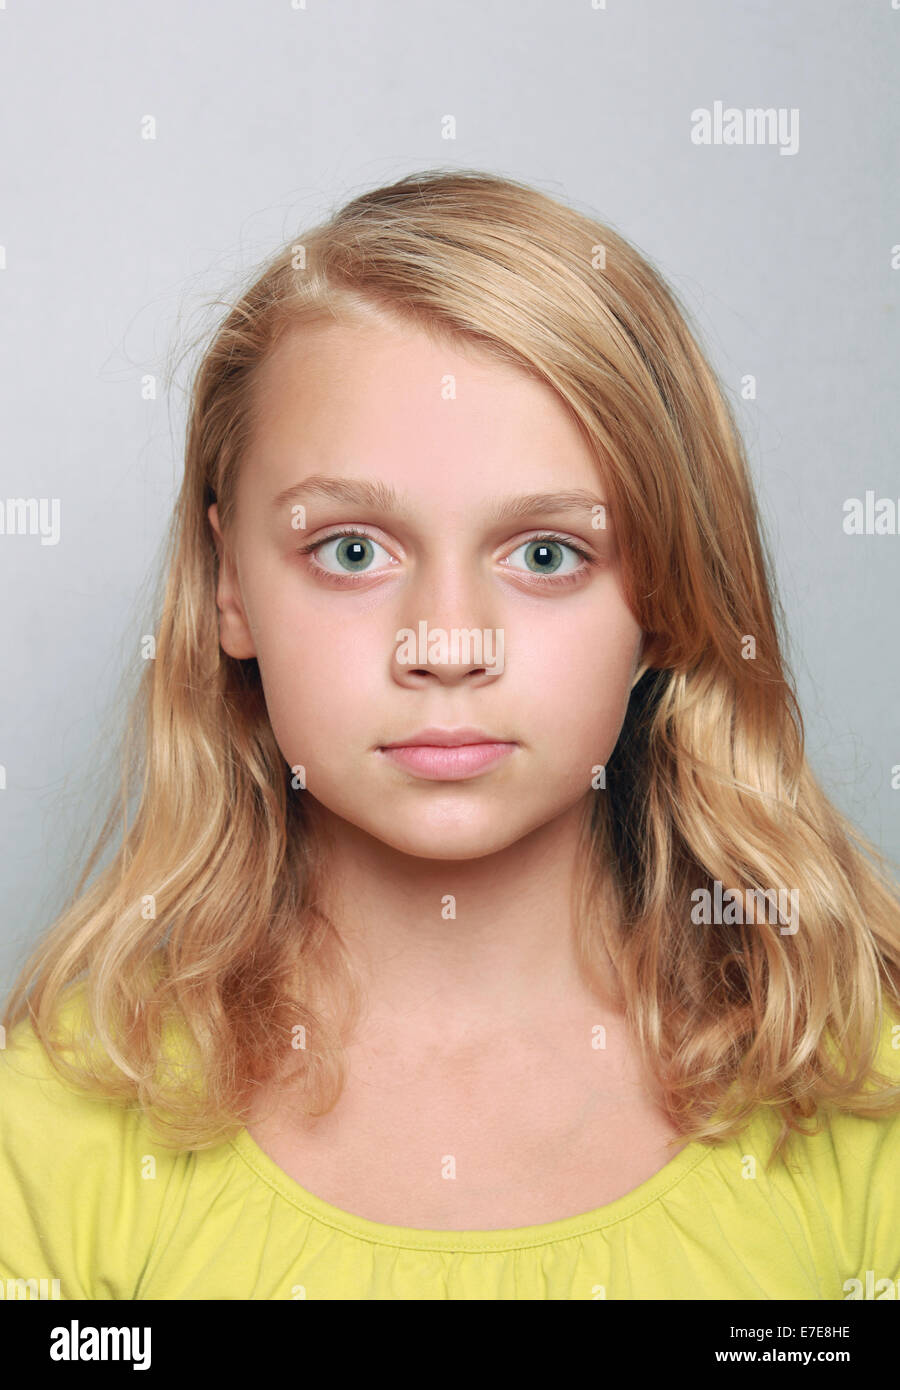 Caucasian bambina closeup ritratto. Headshot su grigio Foto Stock